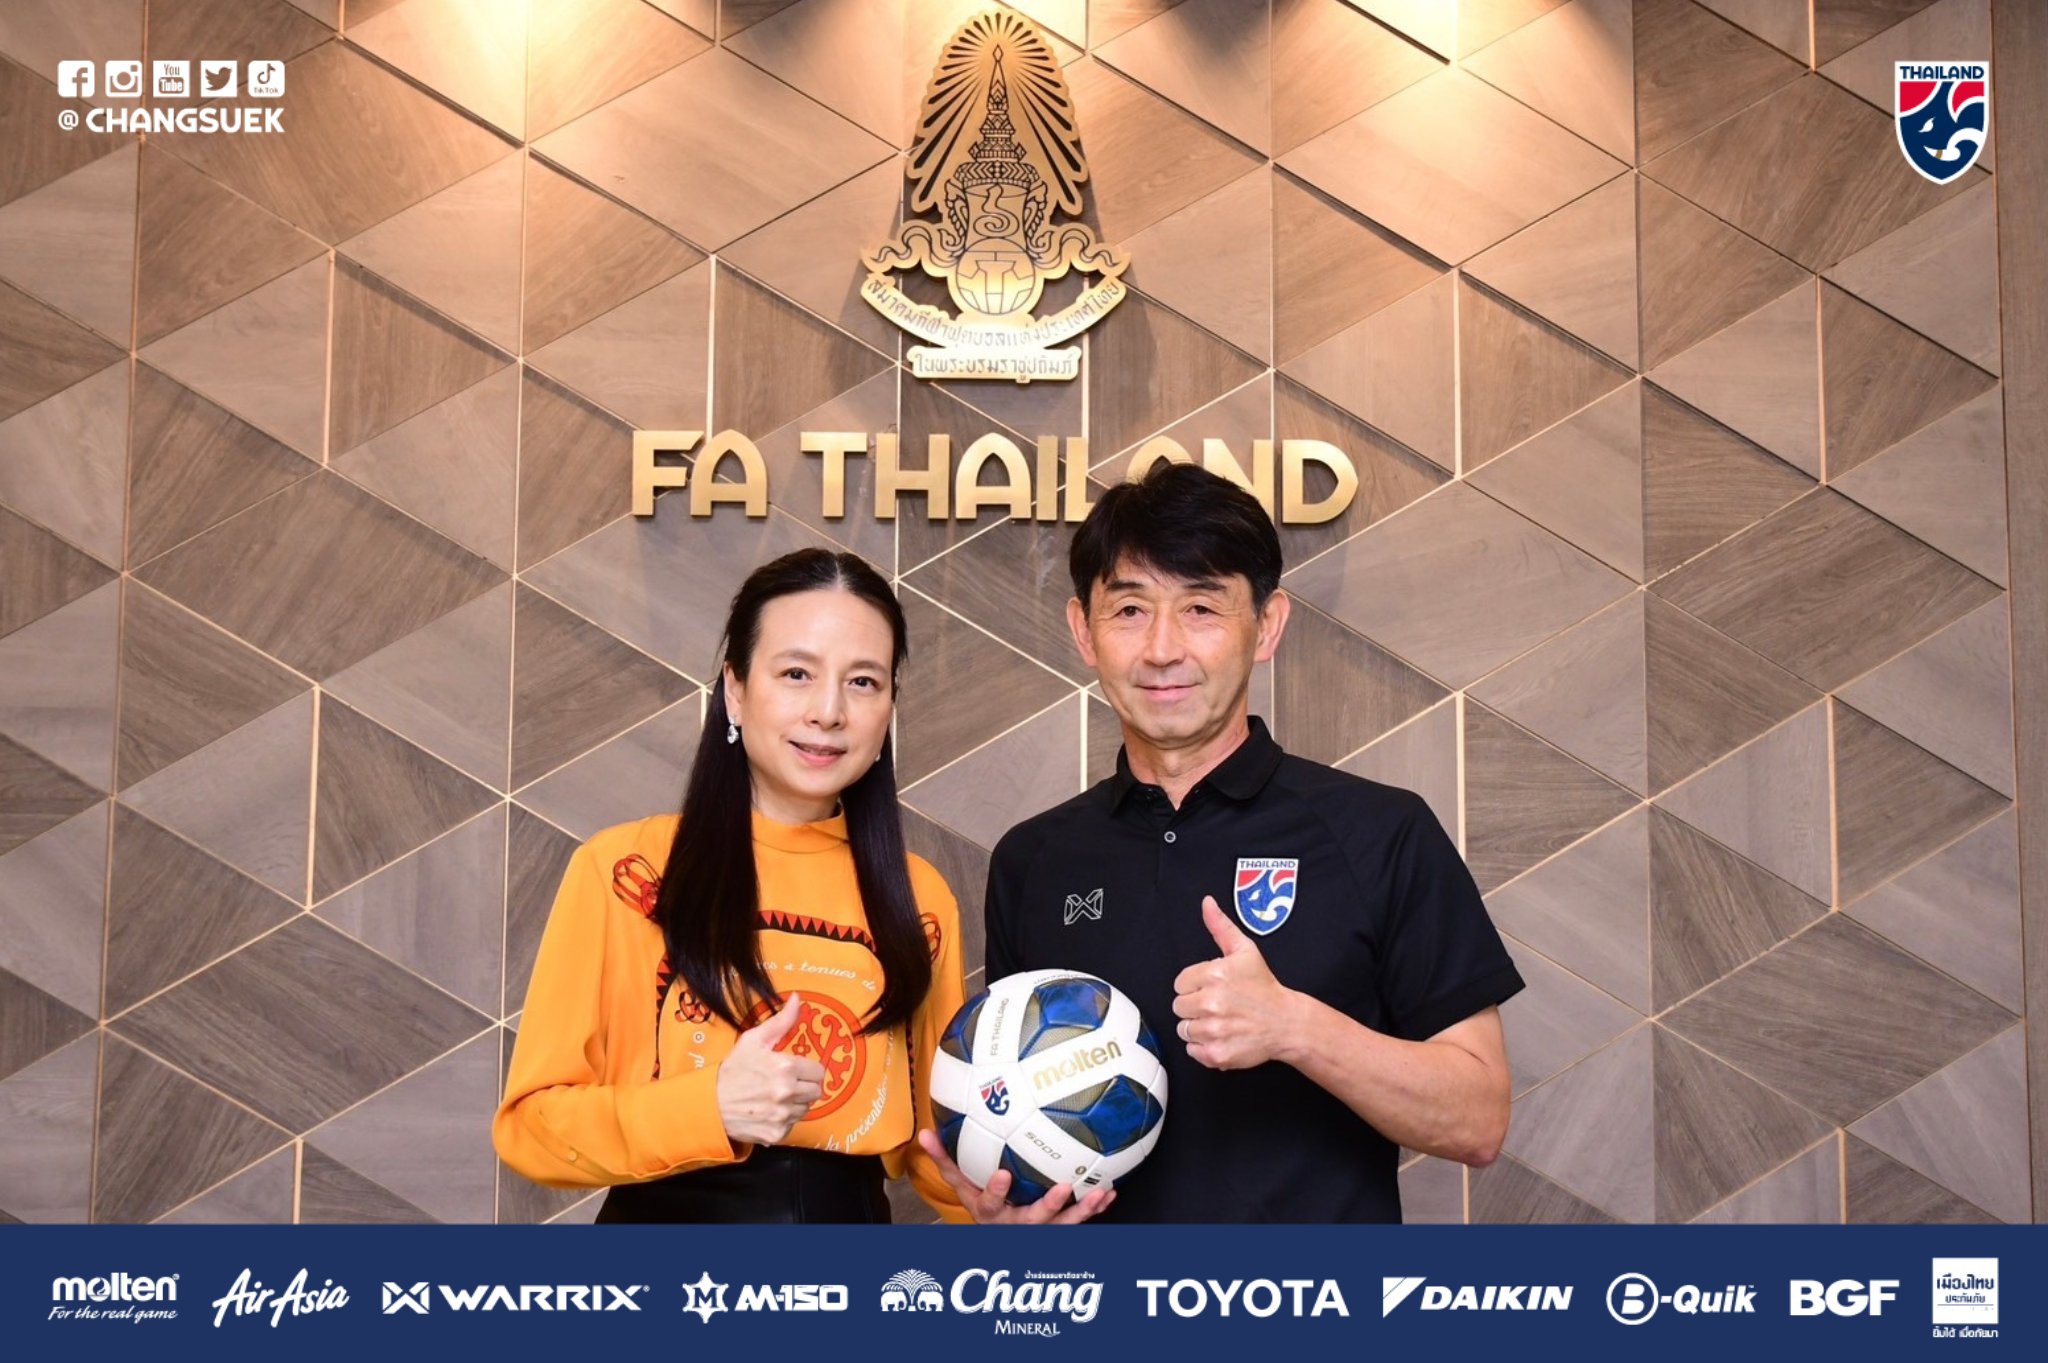 태국 축구 국가대표팀이 대한민국을 상대로 지난 1998 방콕 아시안게임 8강전 승리 후  26년 만에 기적을 만들려고 하고 있다.   태국 축구협회장이 한국전 승리 시 보너스를 더 올려주겠다고 공약하고 나섰다. 태국축구협회